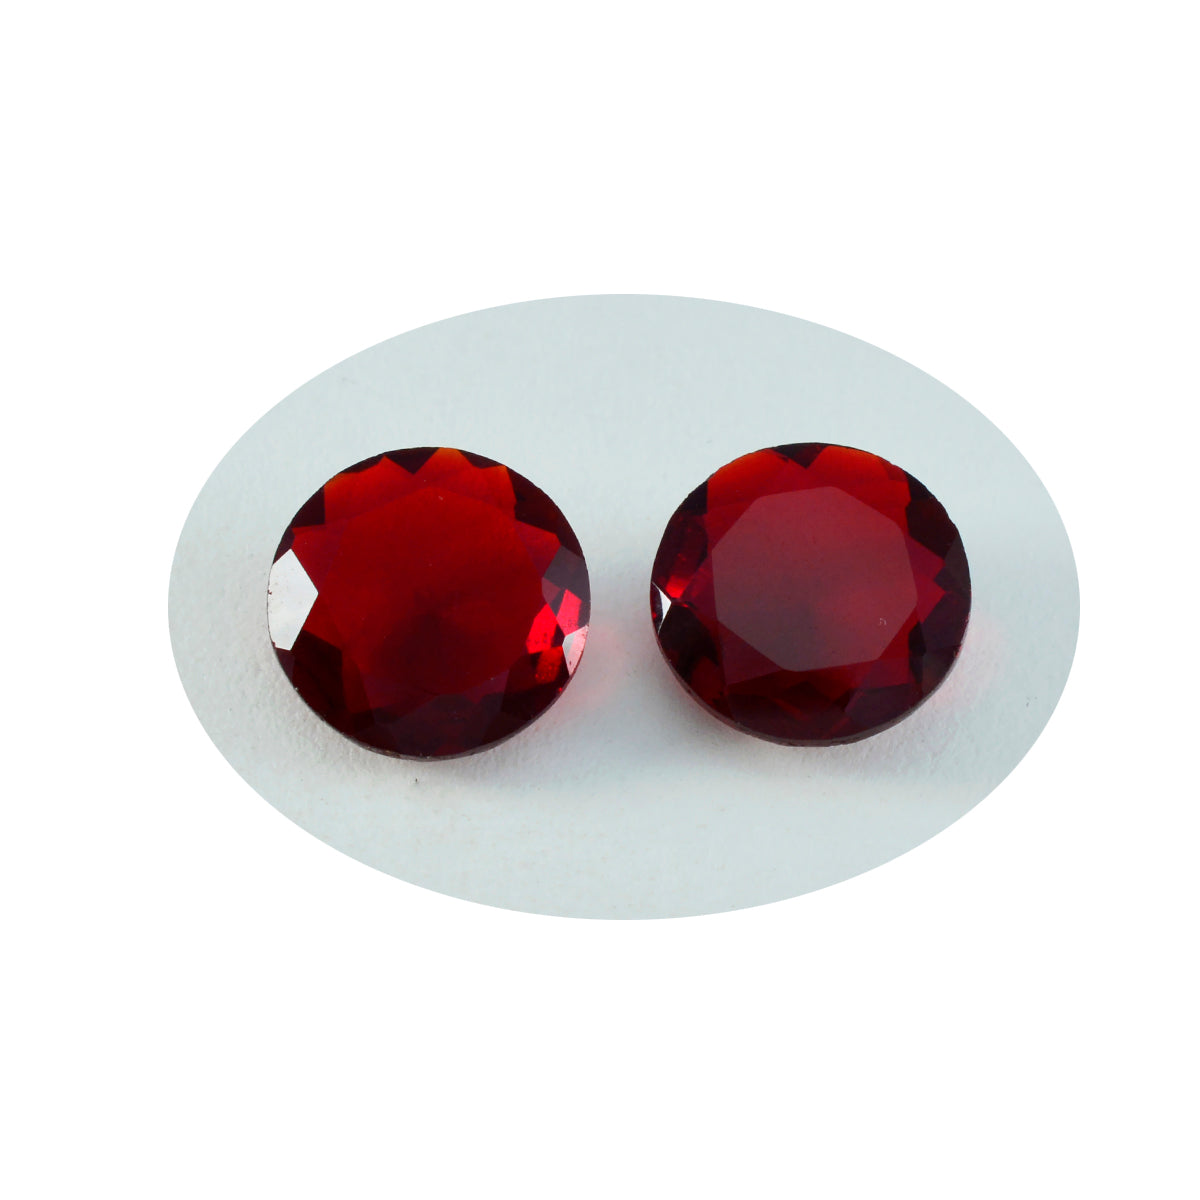 Riyogems 1PC Red Ruby CZ gefacetteerd 14x14 mm ronde vorm uitstekende kwaliteit losse edelsteen